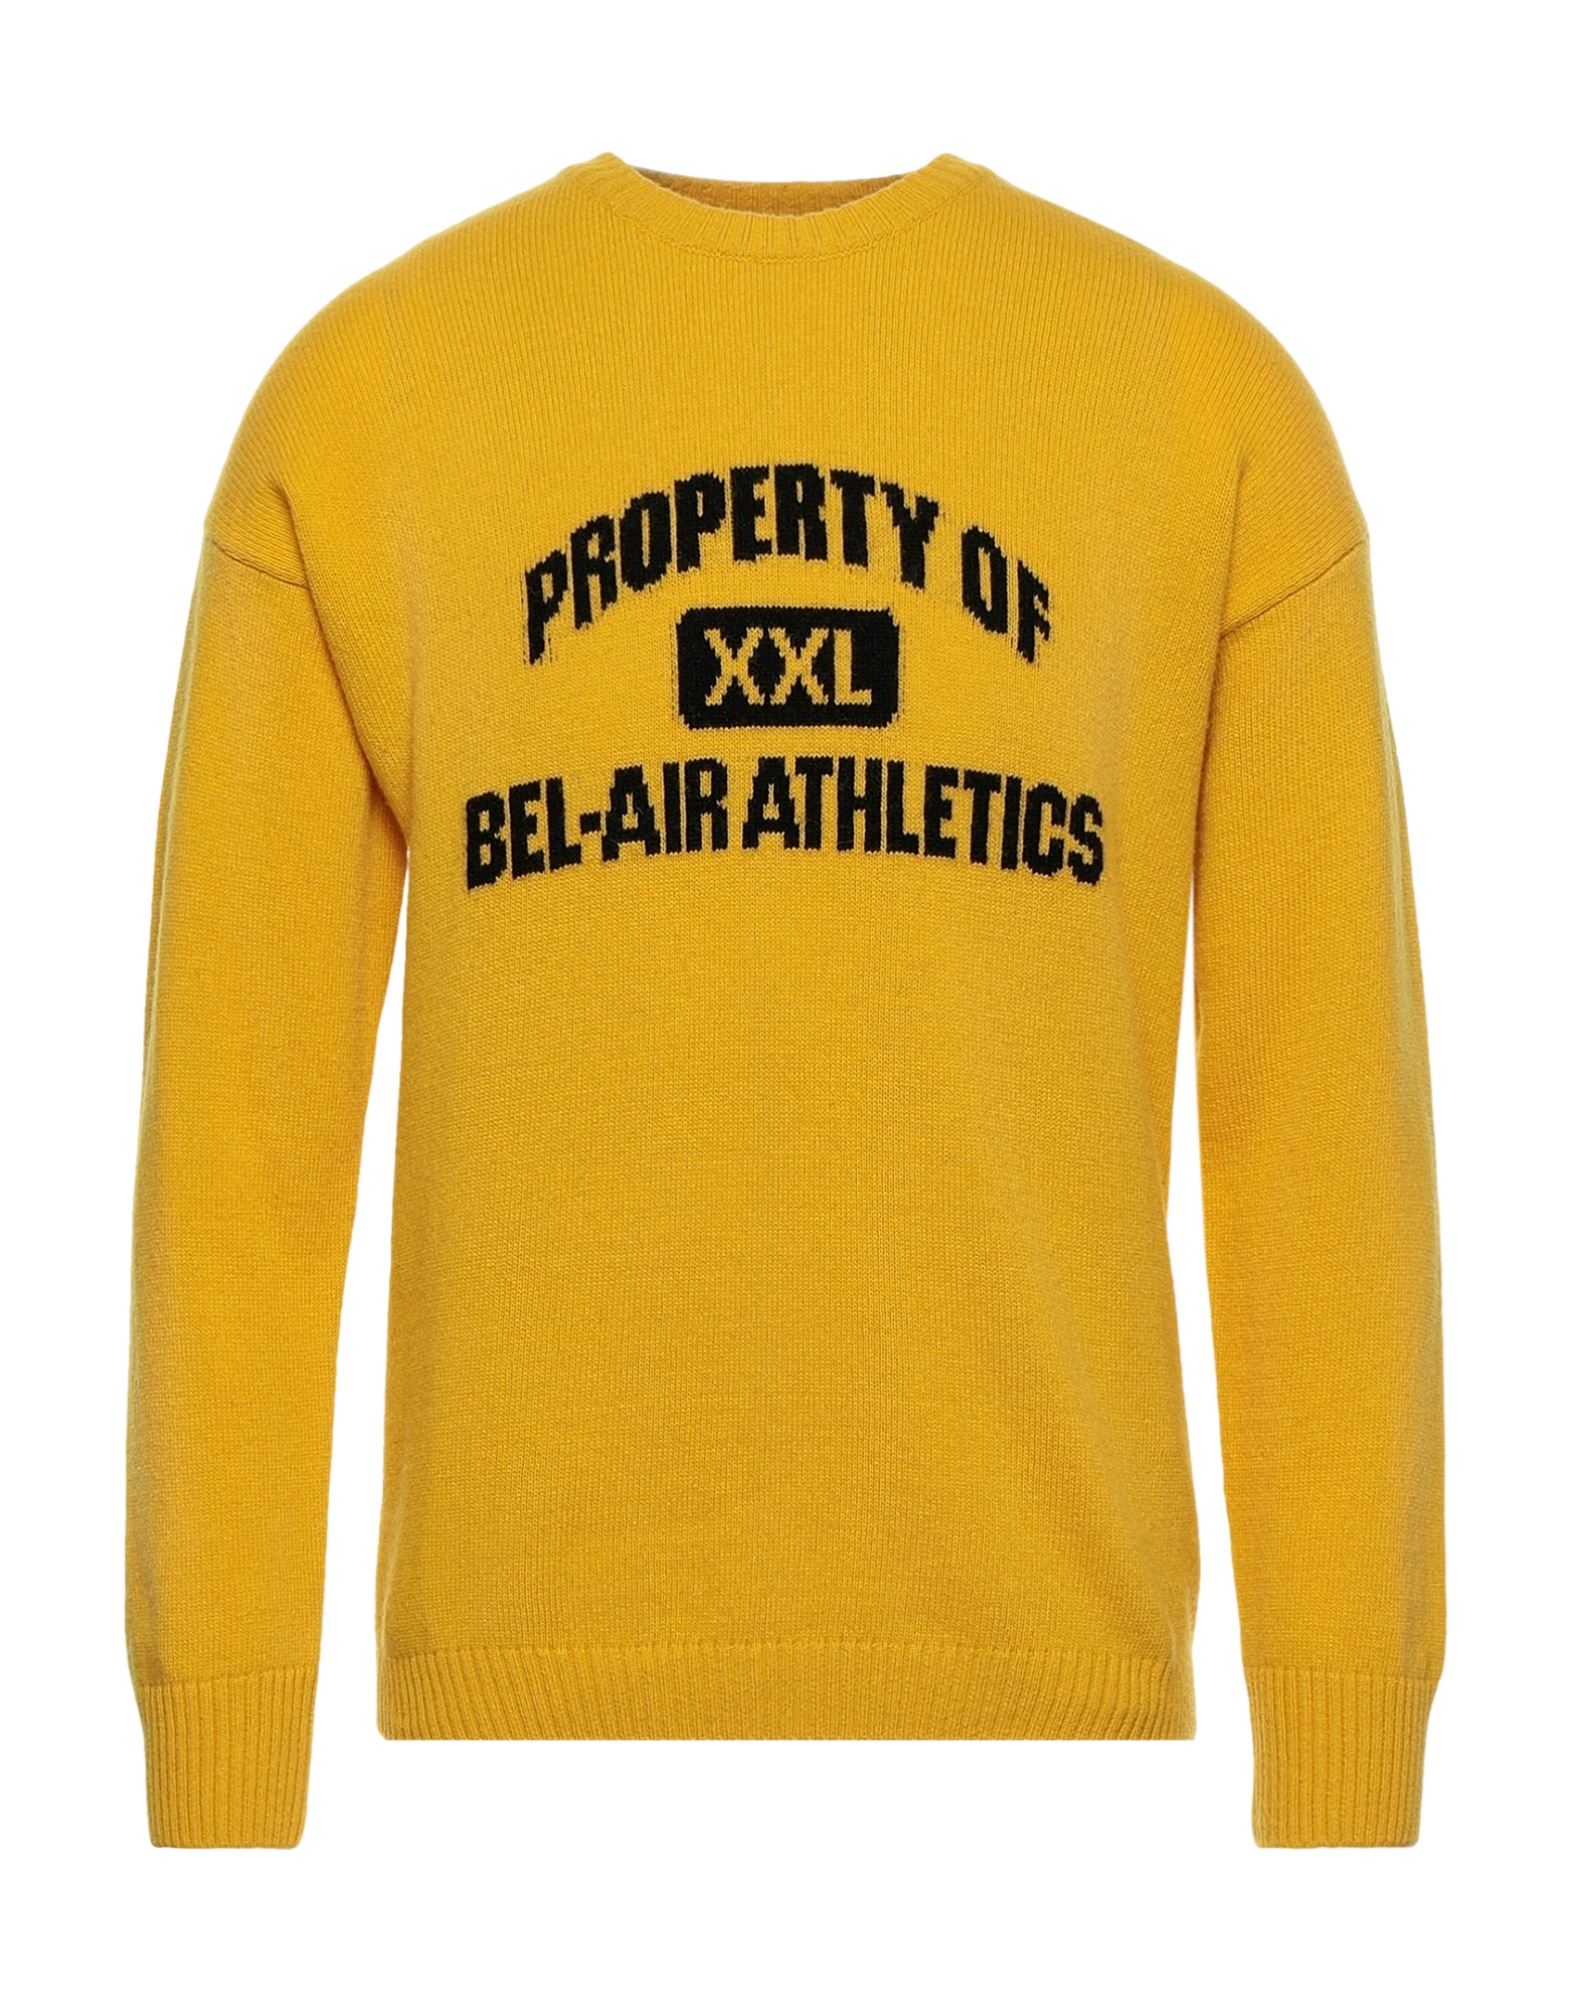 Shop Bel-air Athletics Man Sweater Yellow Size Xl Wool, Polyamide